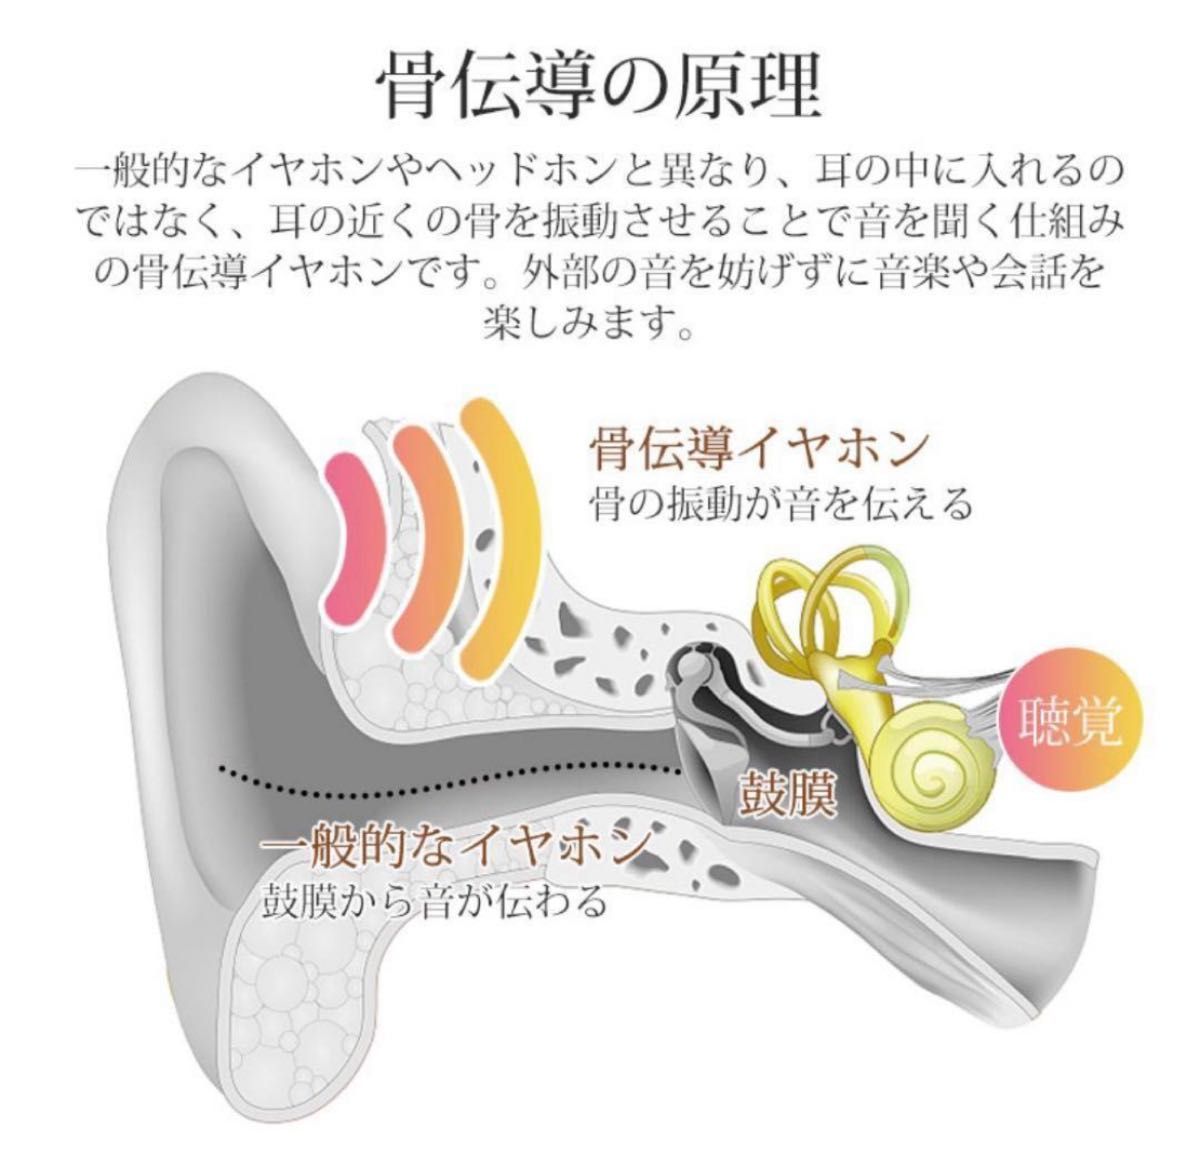 【新品未開封品】骨伝導 ワイヤレスイヤホン ホワイト 白 Bluetooth